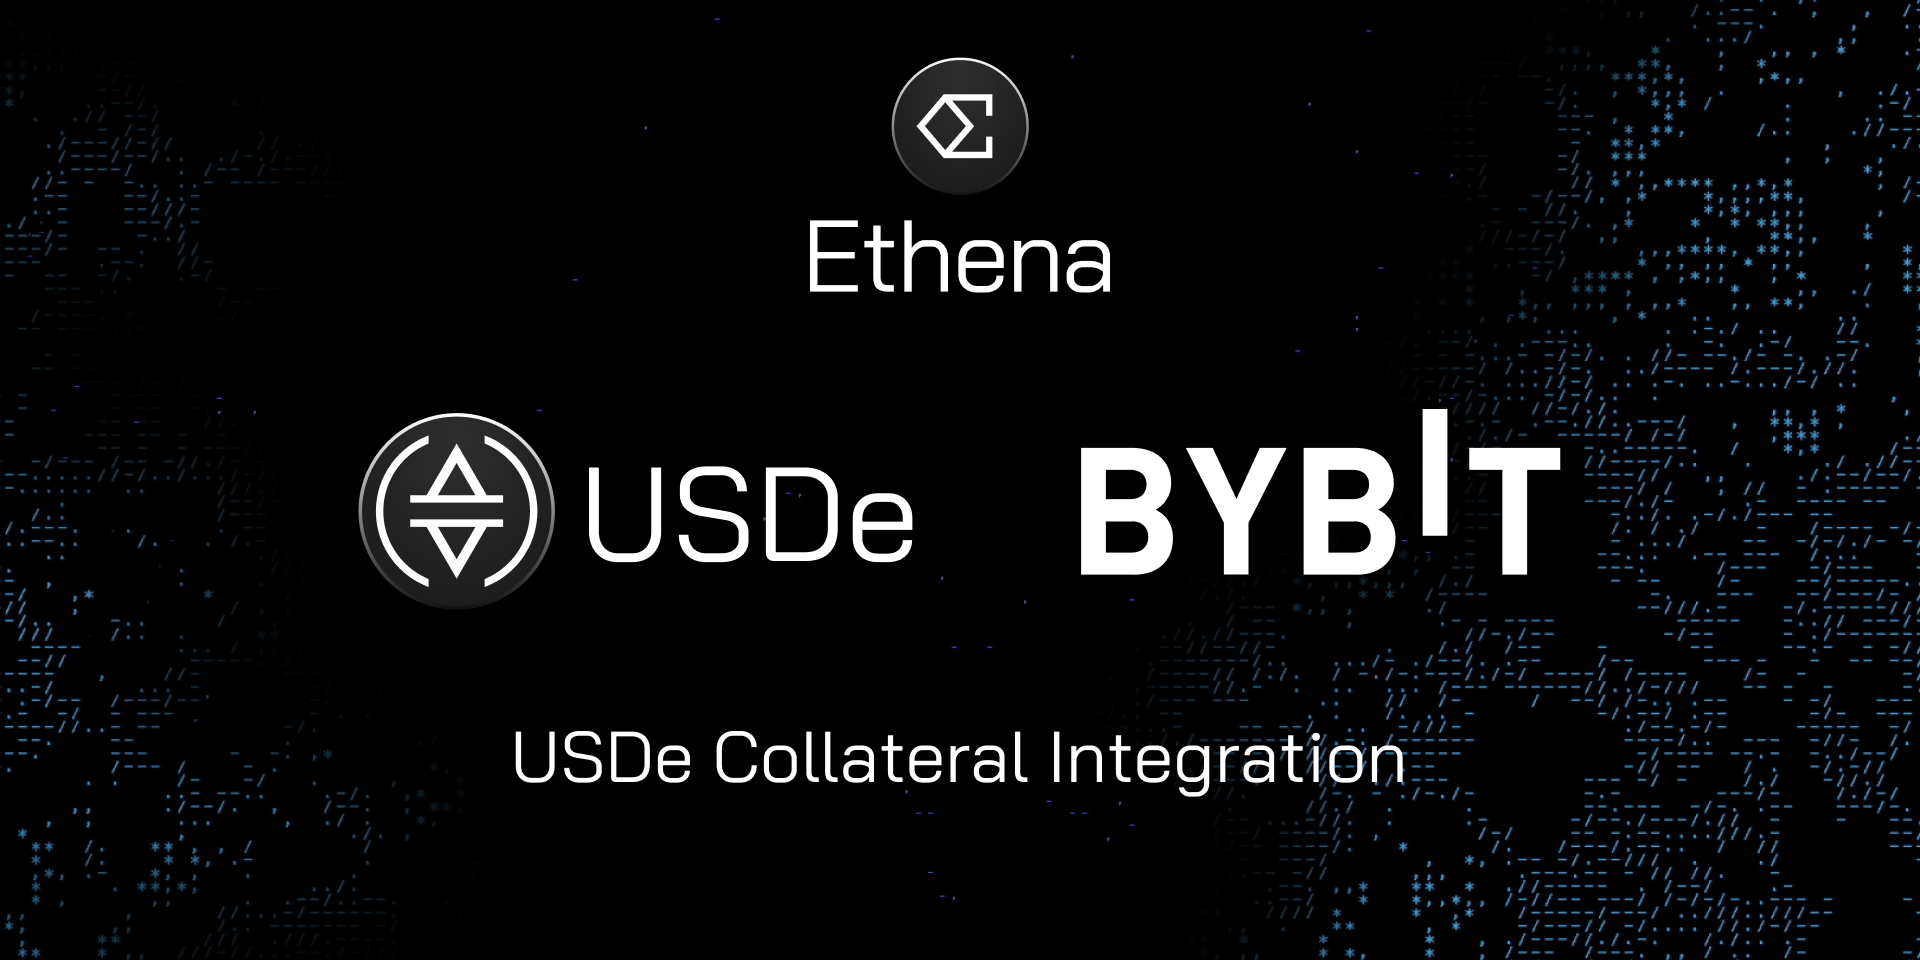 Bejelentették az Ethena és a Bybit integrációját, kiemelt kép